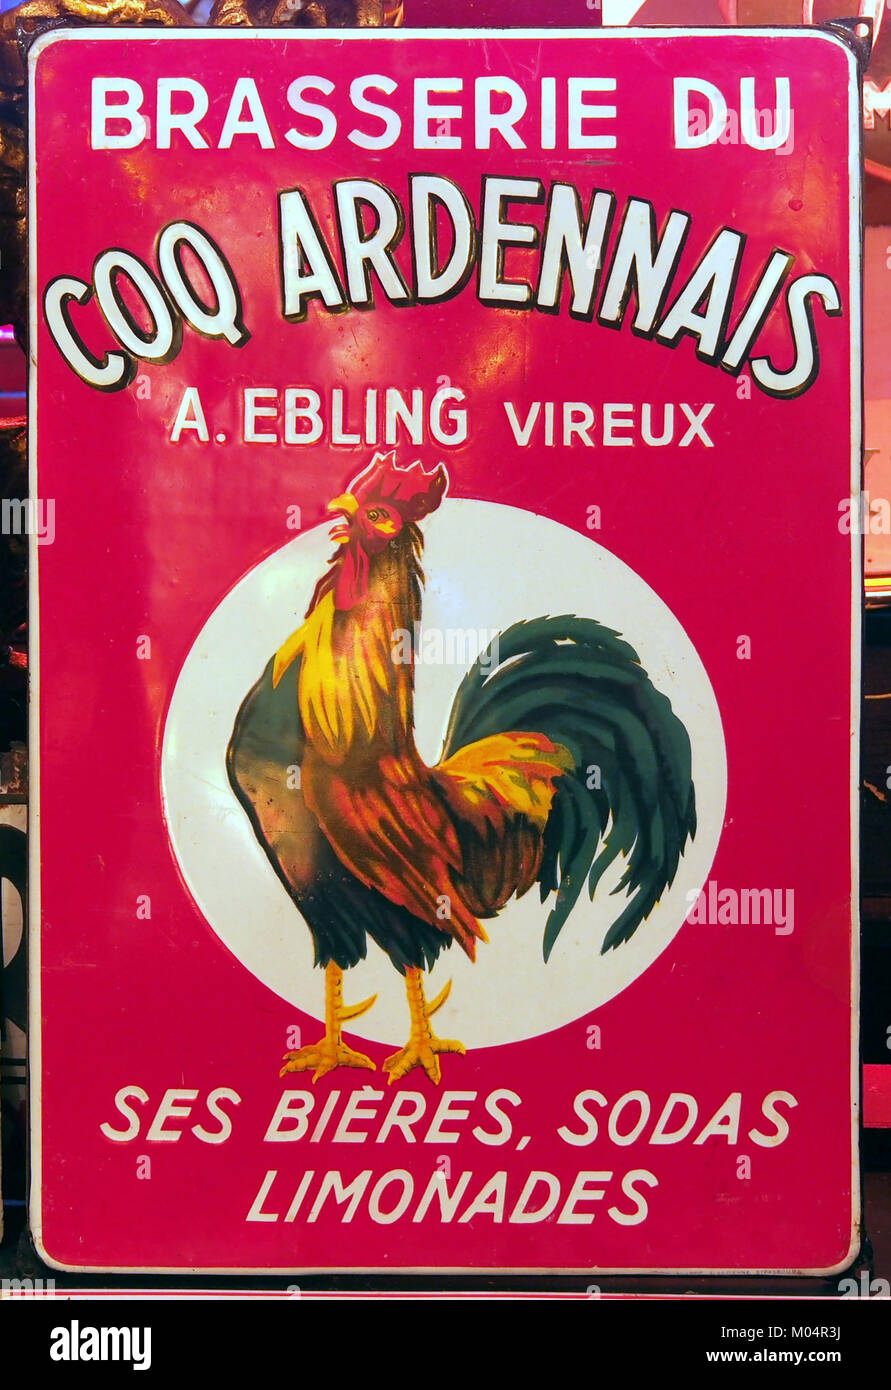 La Brasserie du Coq Ardennais, un Ebling vireux, smalto pubblicità segno Foto Stock